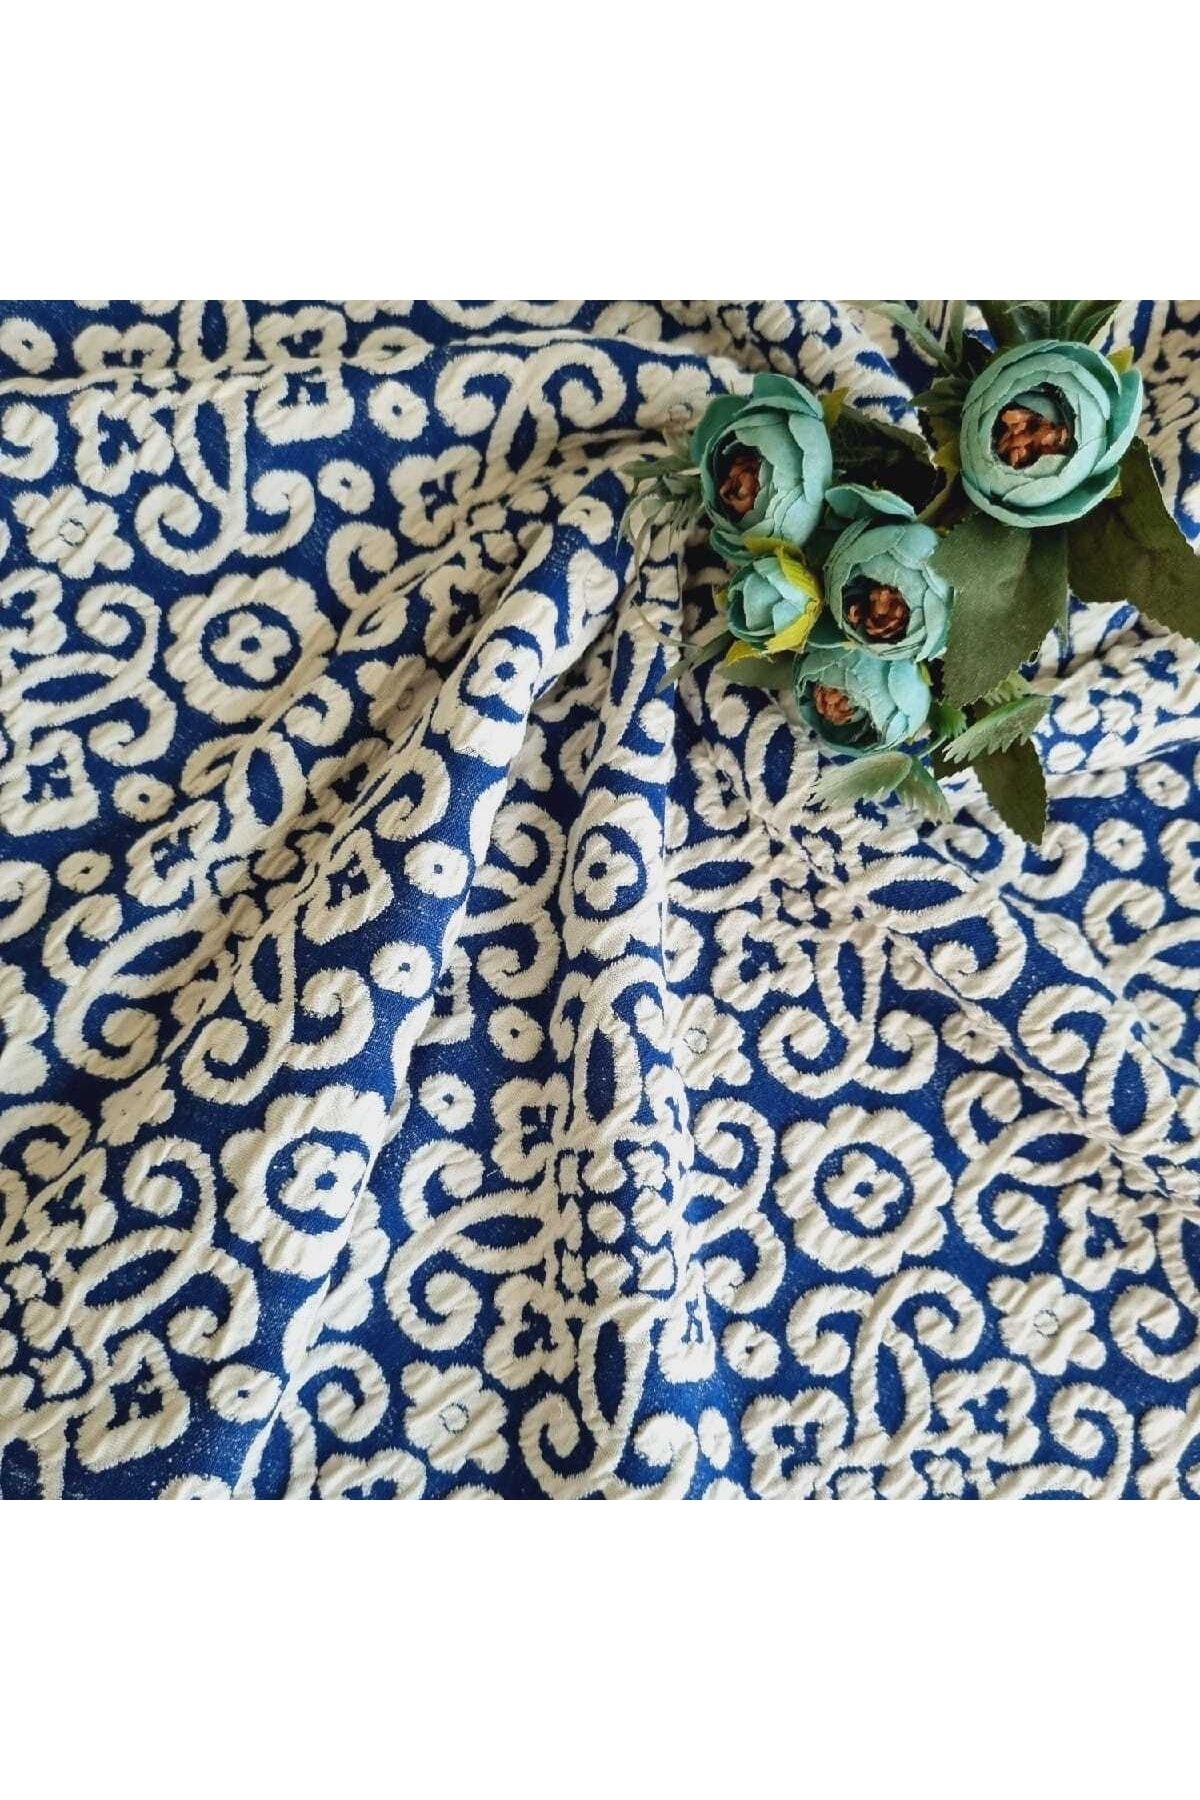 DORE Kabartma Barok Desenli Örme Kumaş (elbiselik,eteklik,gömleklik Örme Kumaş )